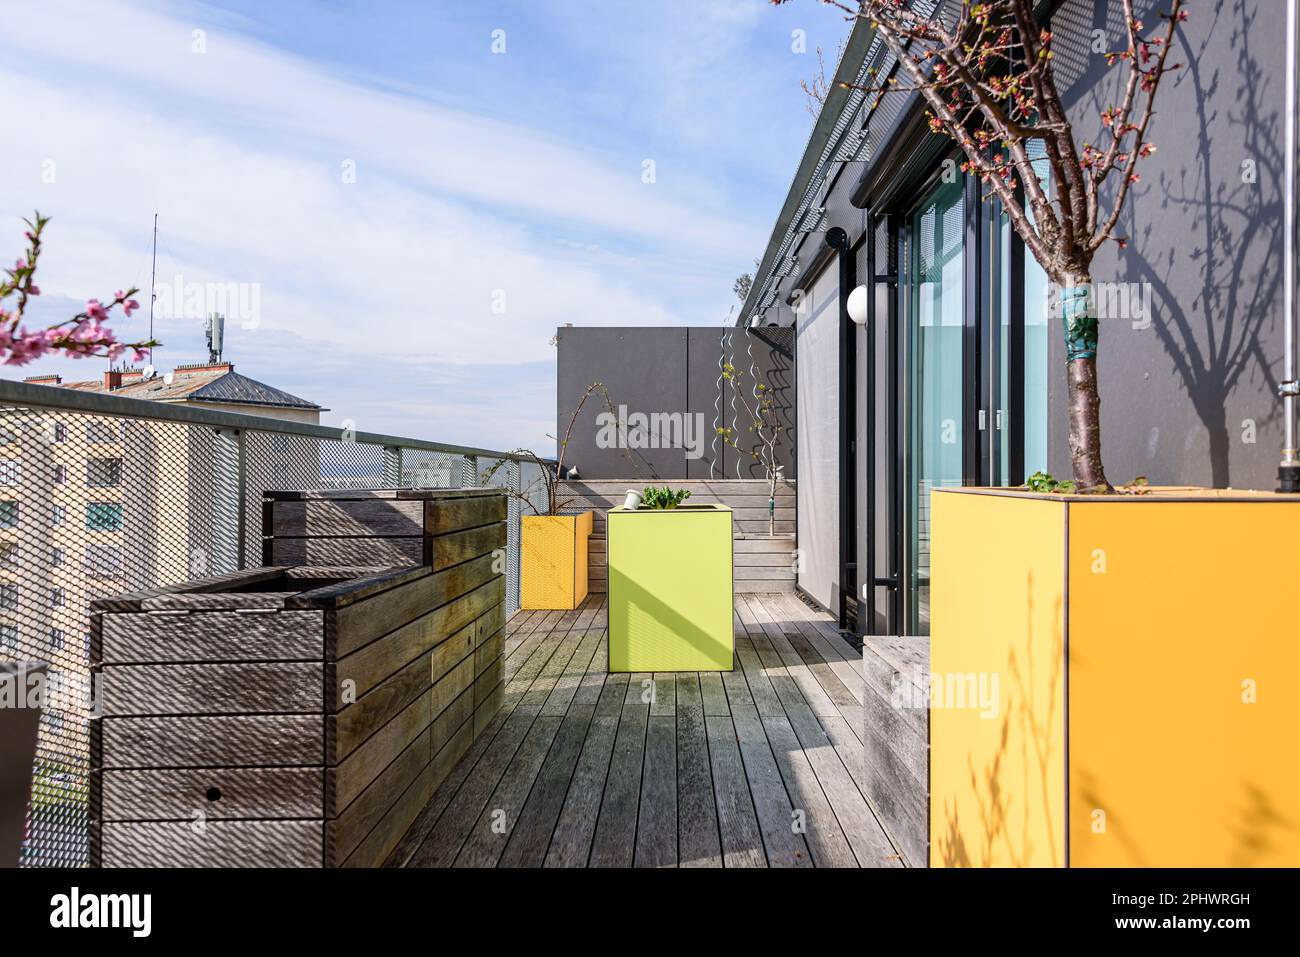 Farbenfrohe Dachterrasse in Wien mit gelben und grünen Möbeln für städtische Gartenarbeit Stockfoto